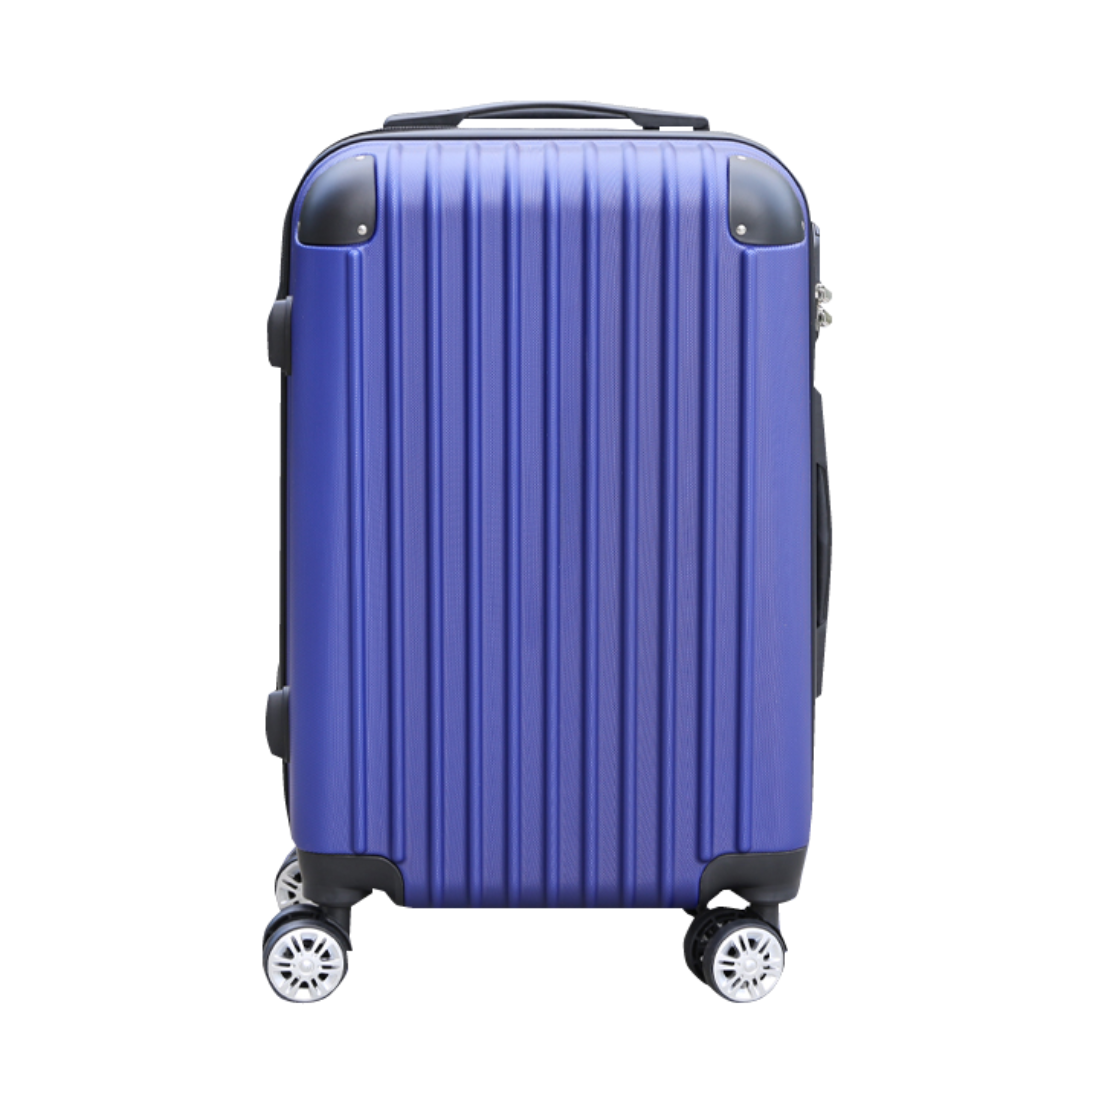 スーツケース 機内持ち込み Sサイズ 軽量 キャリー 旅行カバン ダブル キャスター 静音 2泊 3日 旅行 女子旅 ビジネス メンズ レディース  ABS樹脂 高級感